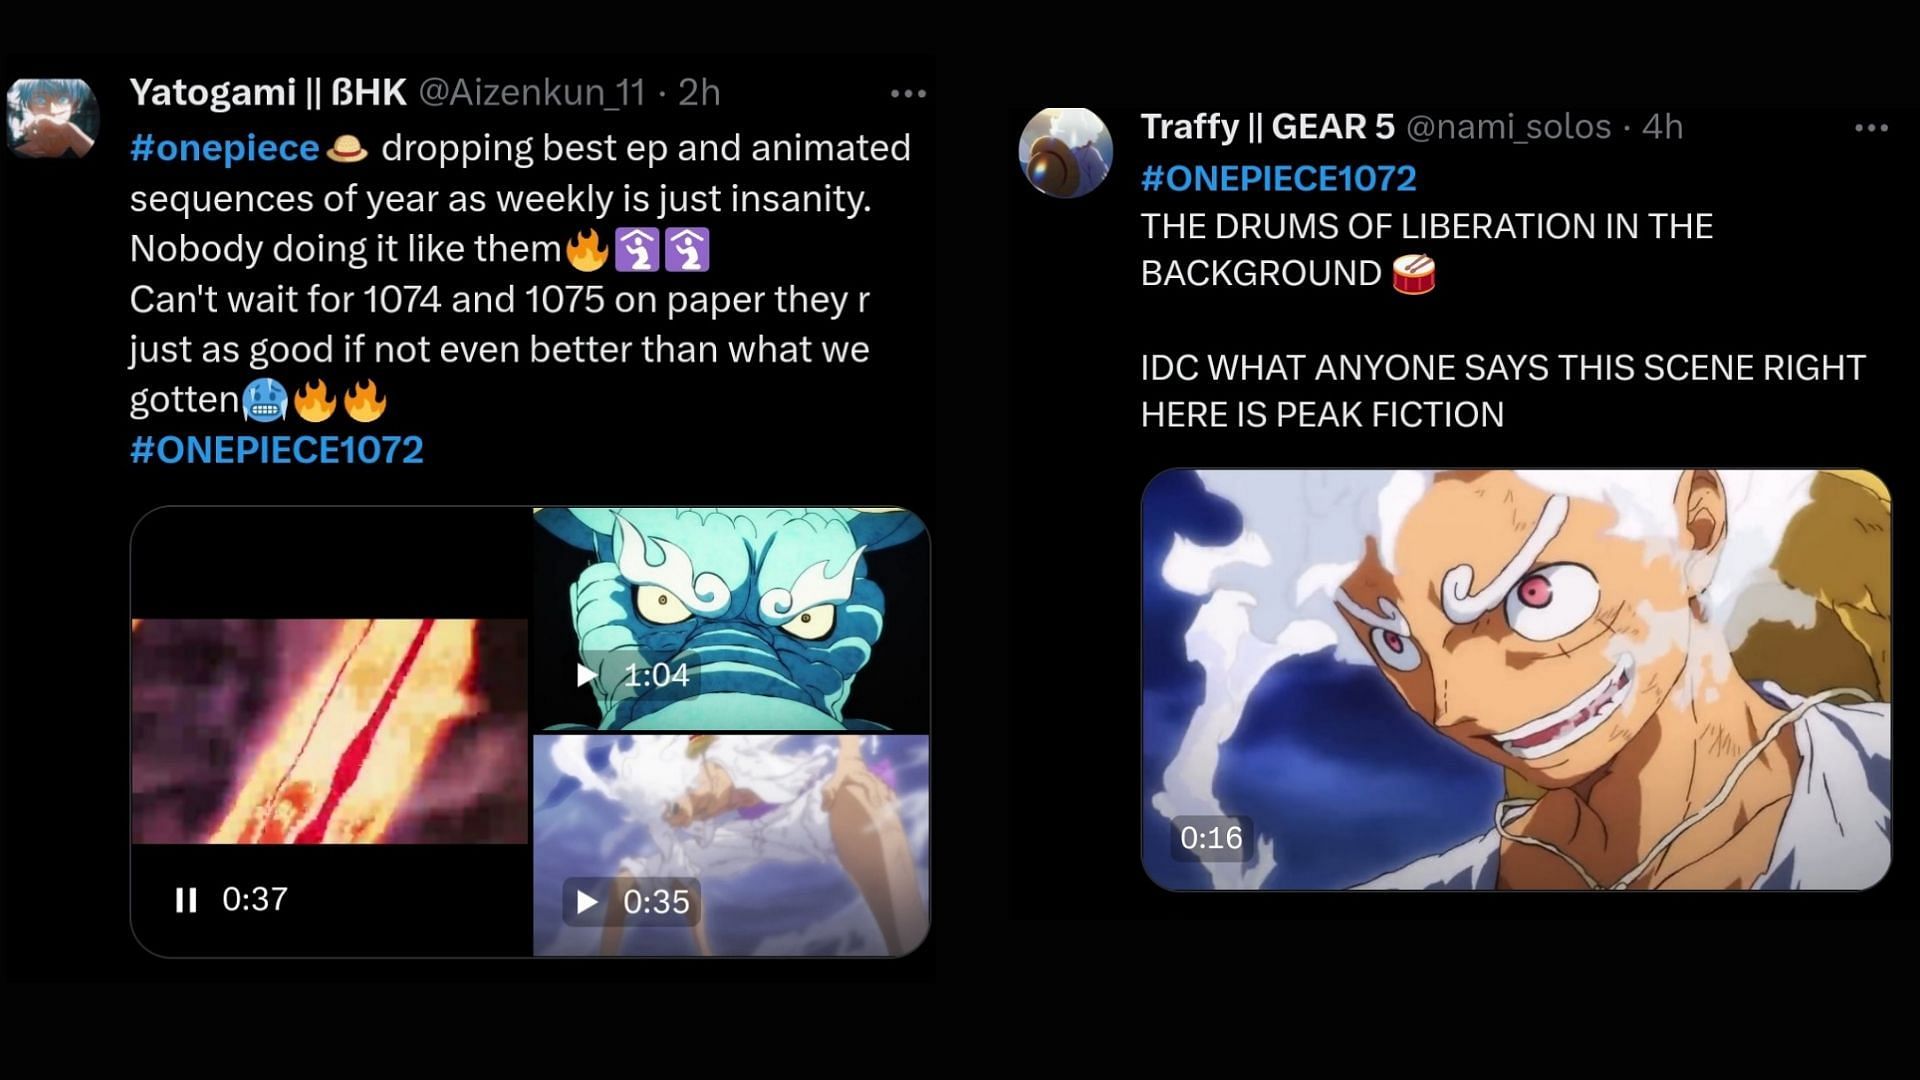 Before One Piece Luffy Gear 5, Dragon Ball Super Broke the Internet - DBS Season  2 Update Convinces Fans it Will Happen Again - FandomWire